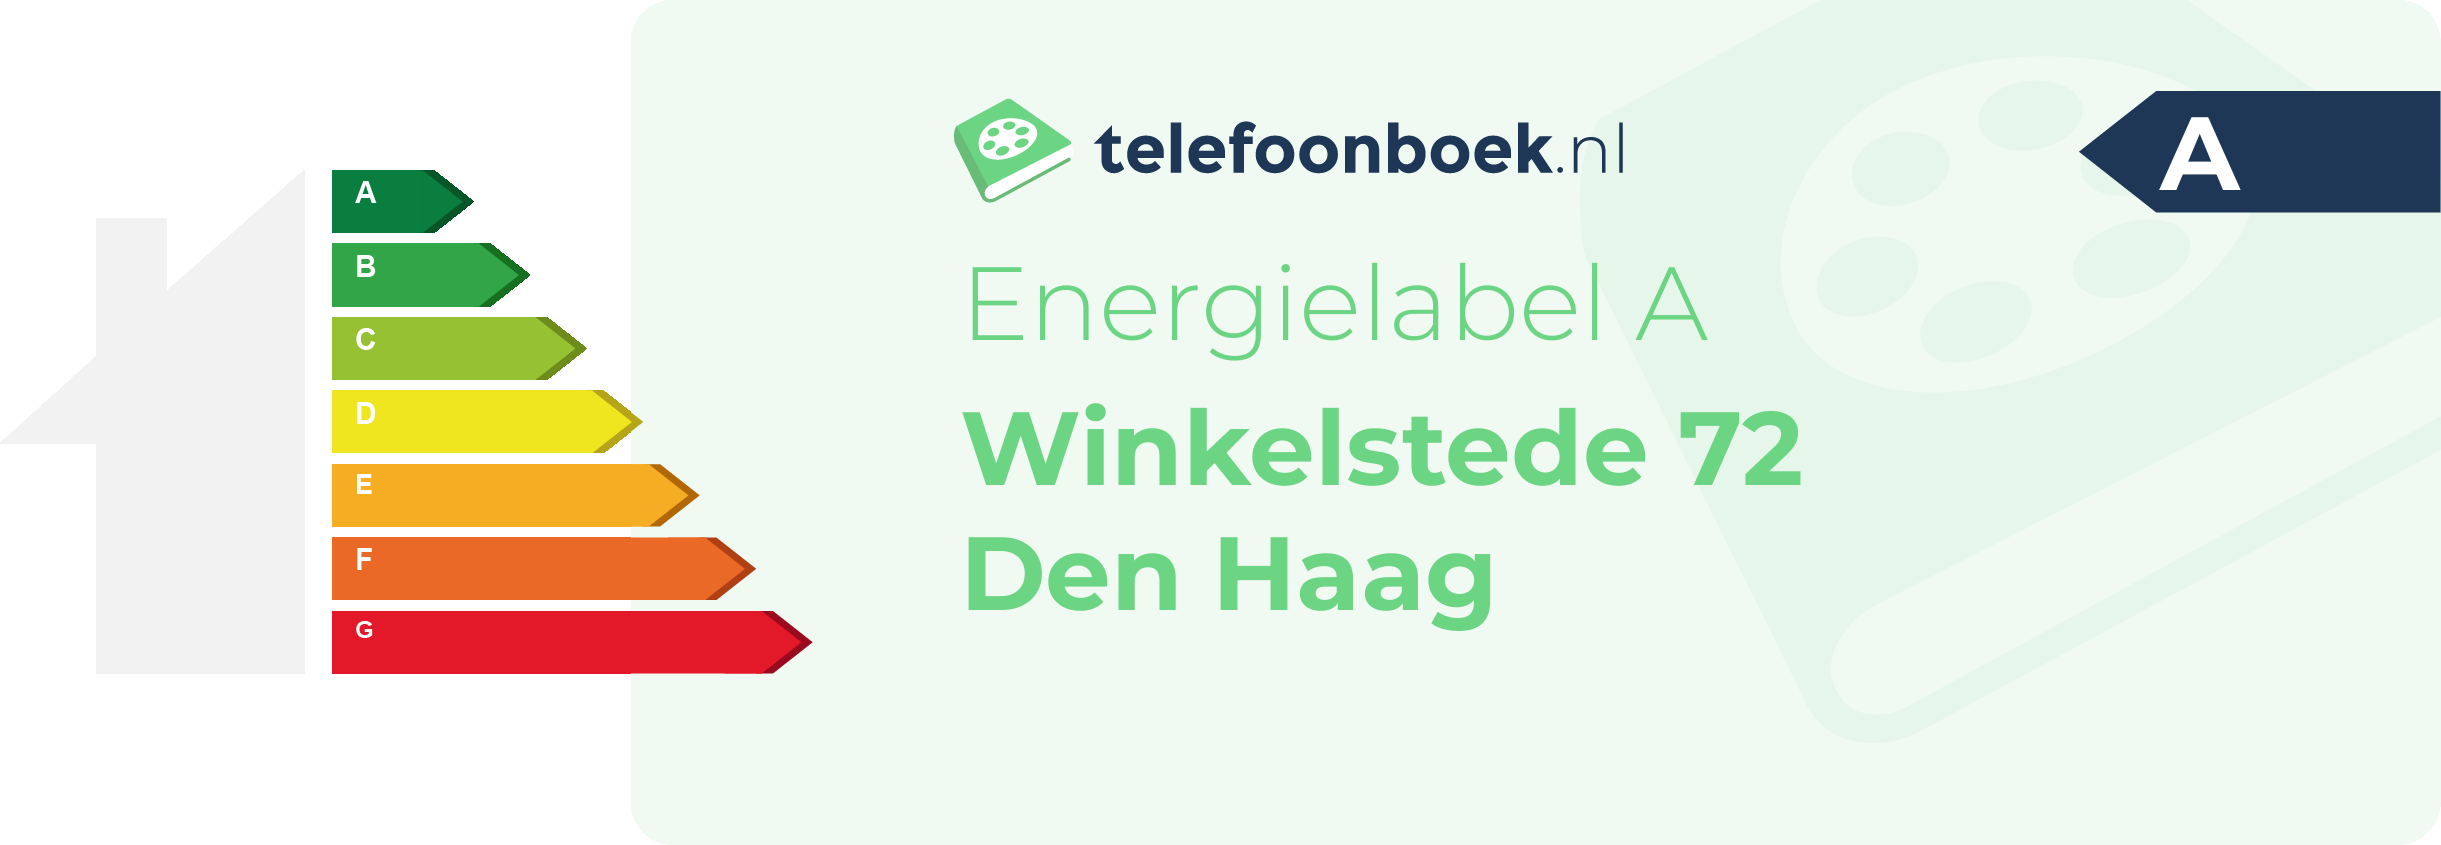 Energielabel Winkelstede 72 Den Haag